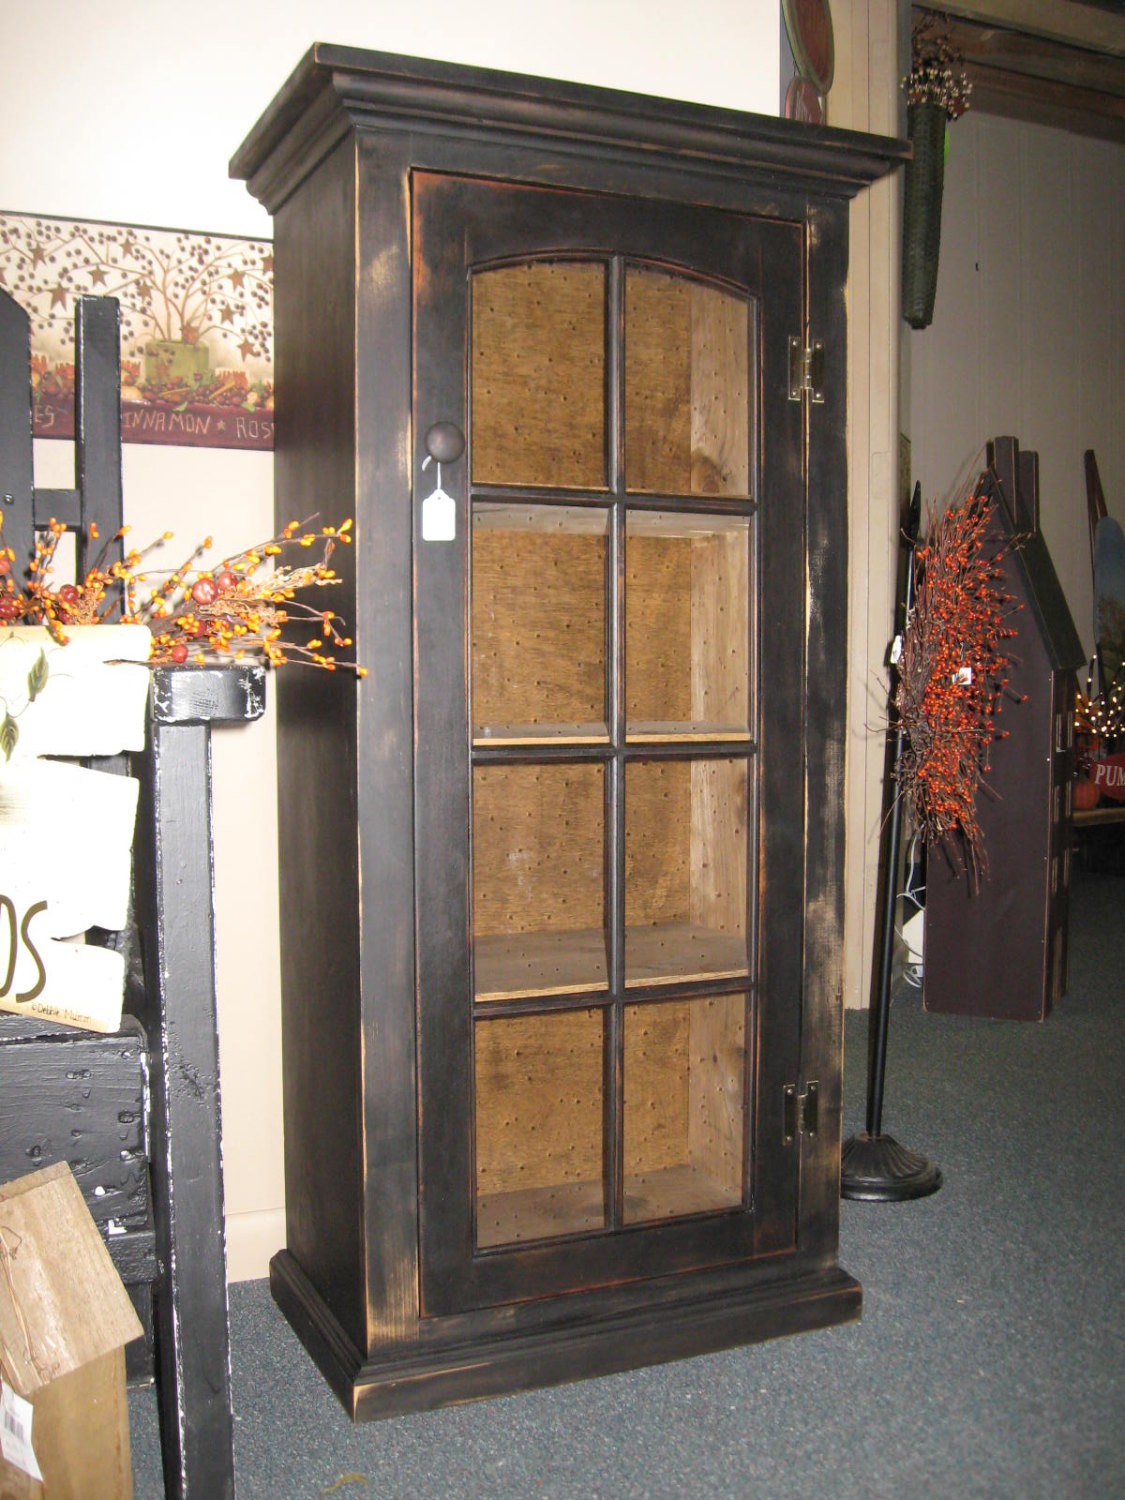 Primitive cabinet with glass door